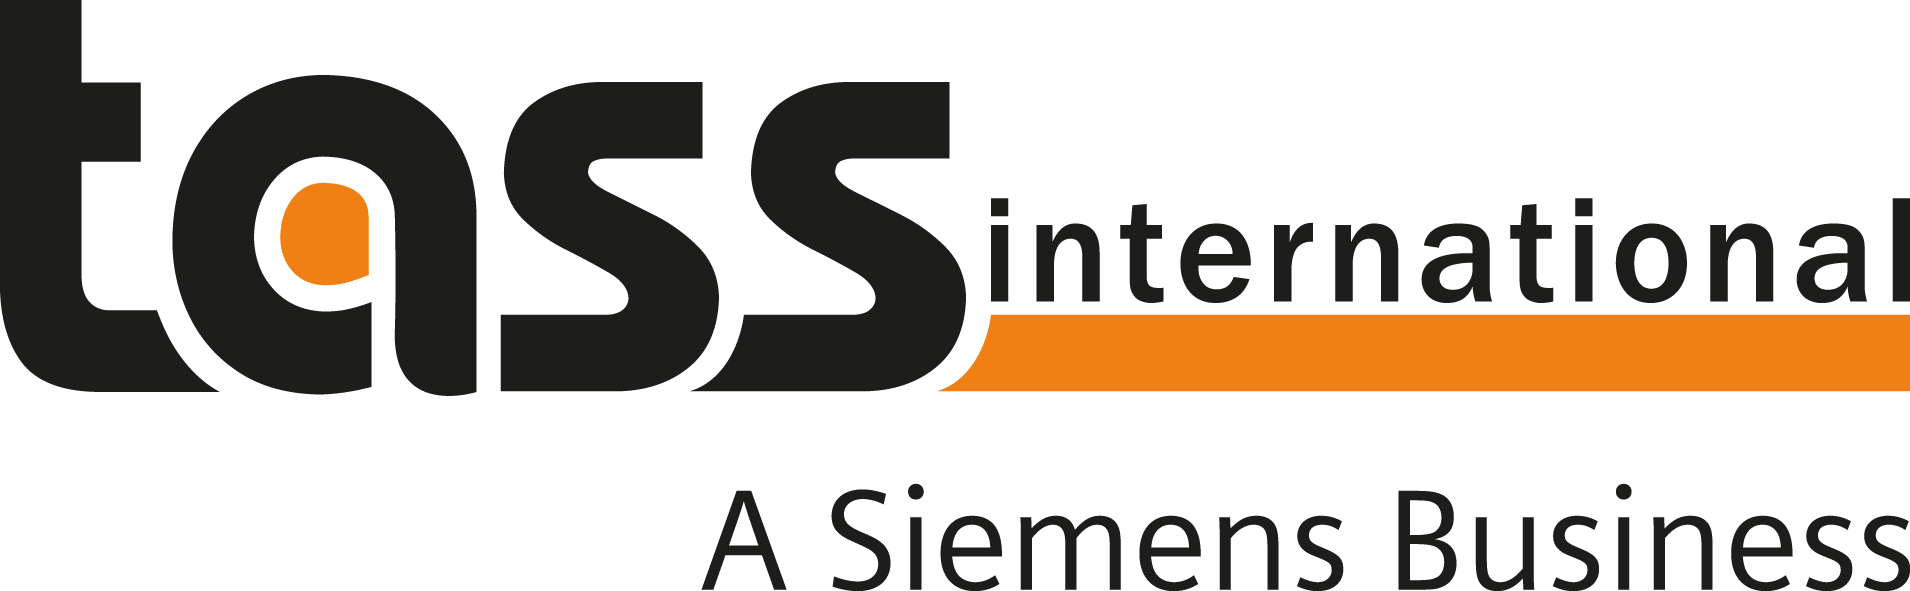 TASS International